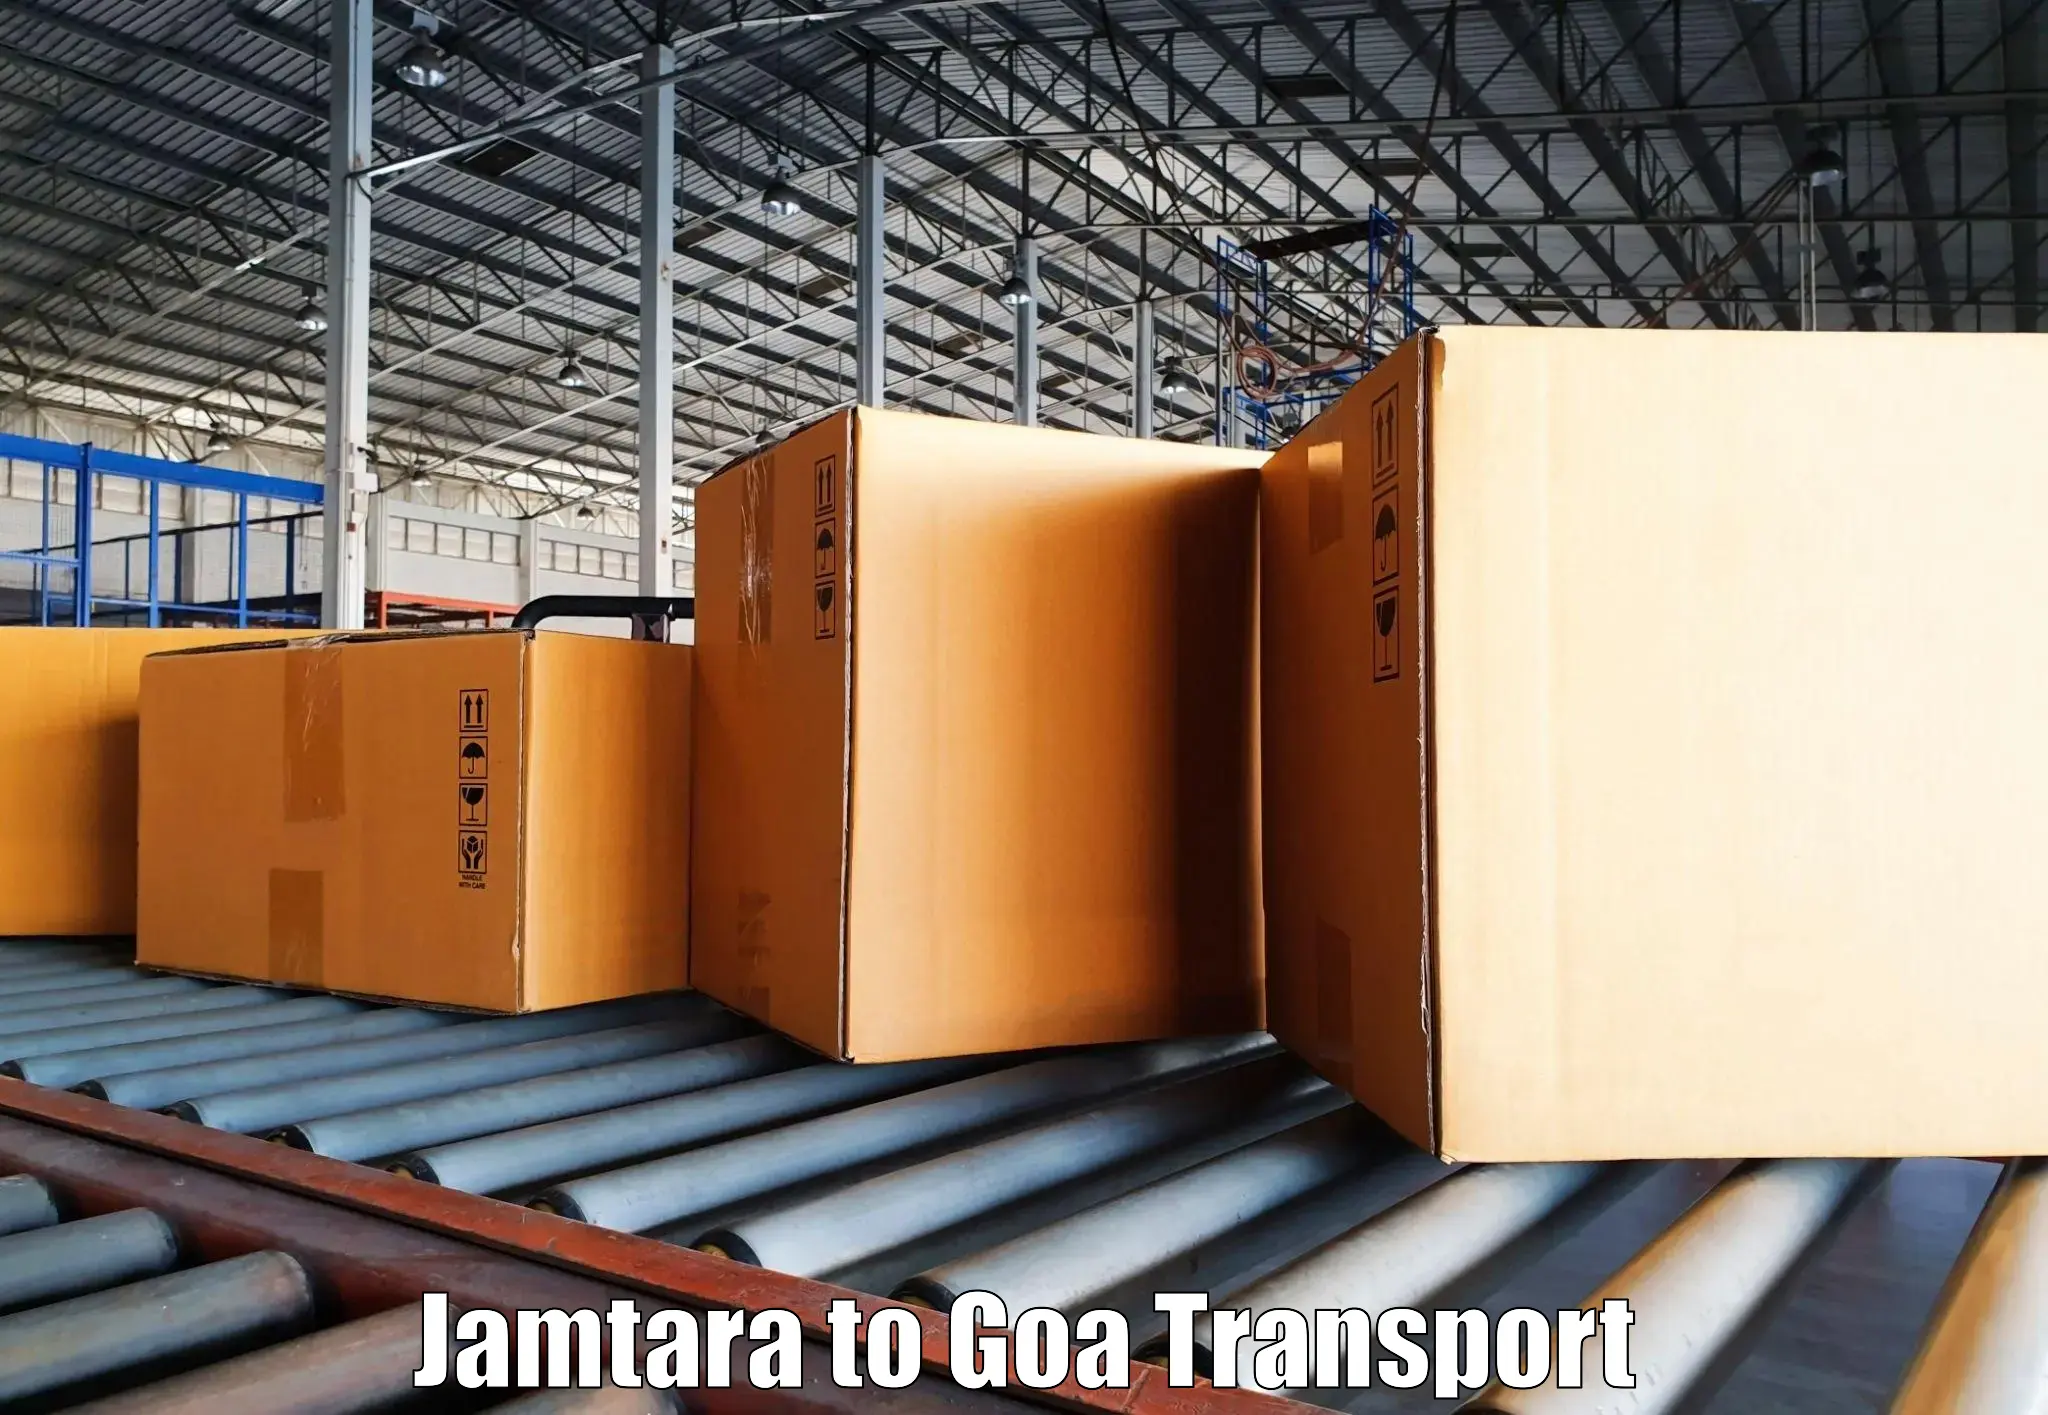 Express transport services Jamtara to Panjim